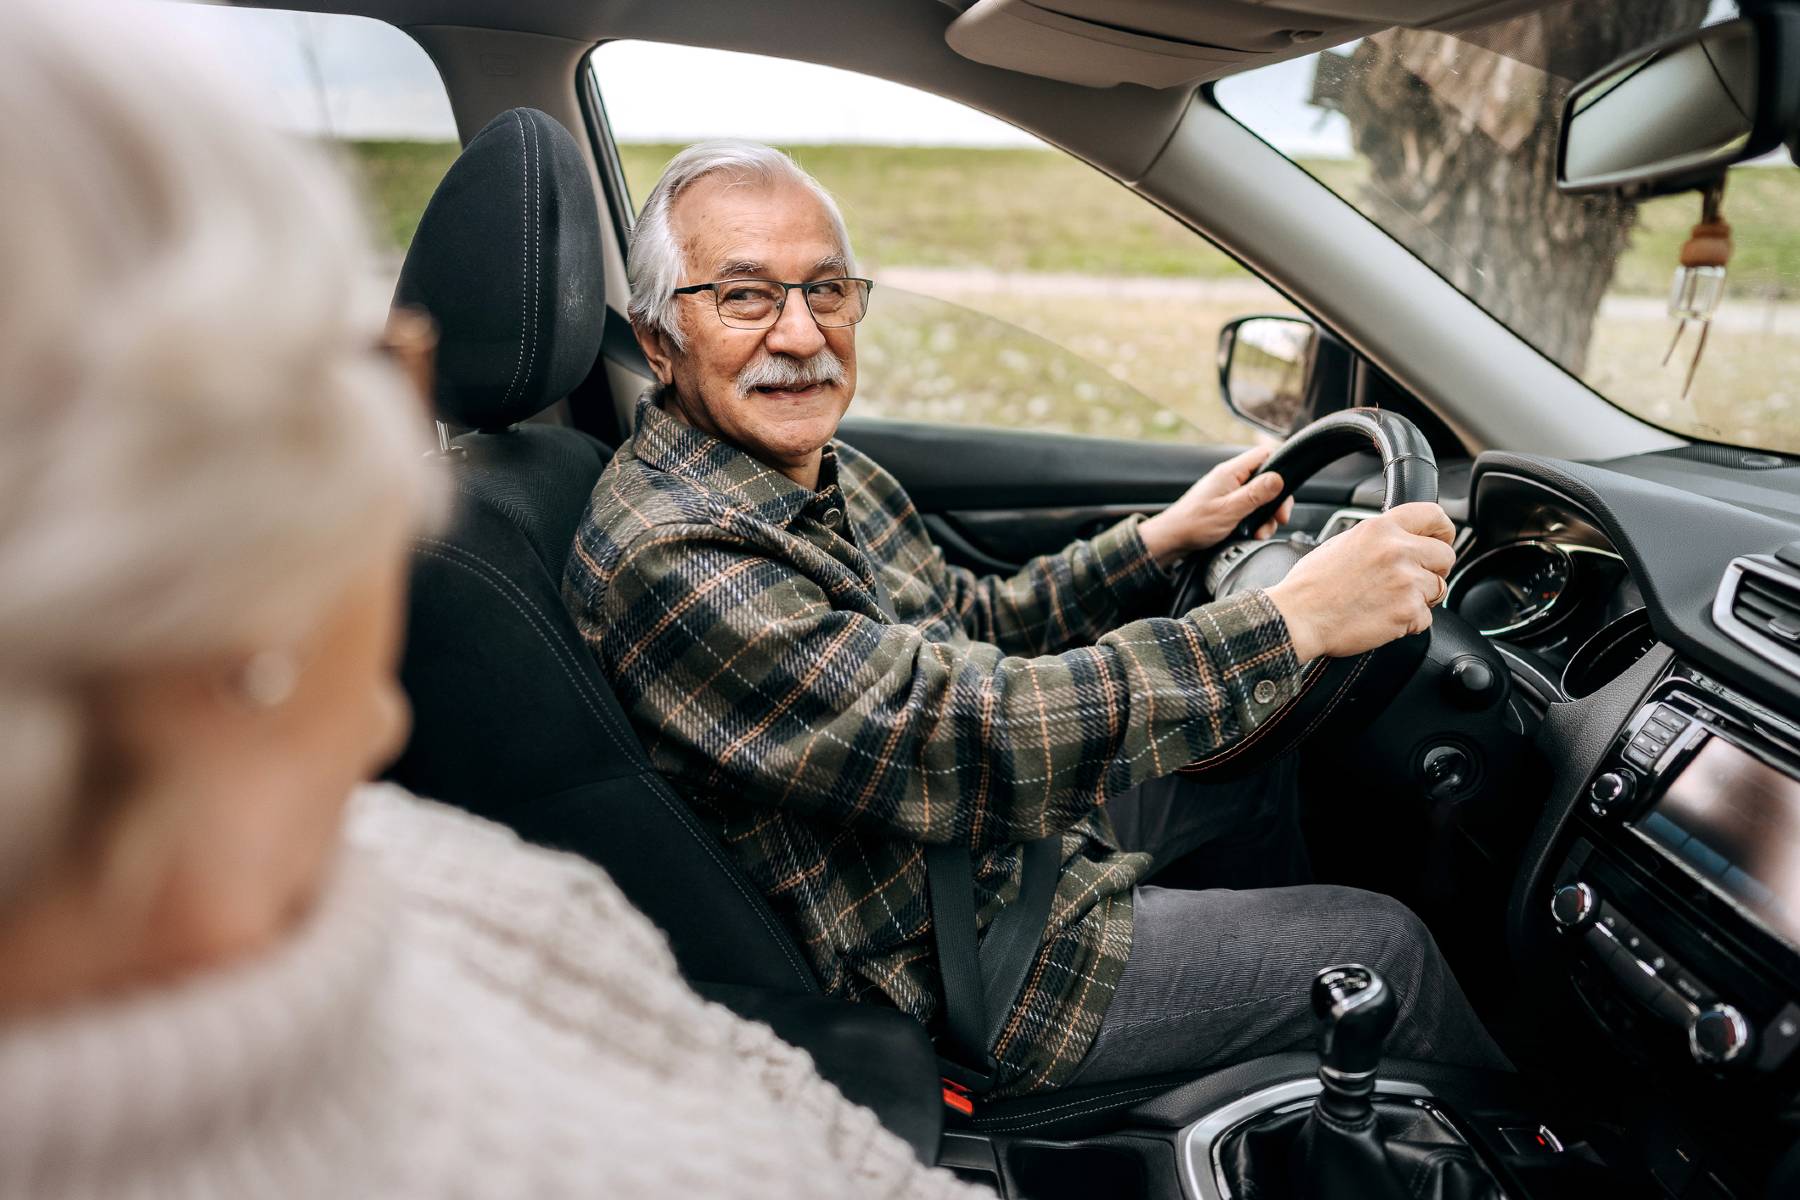 Adiós a conducir: ¿son un peligro en la carretera los conductores mayores de 65 años?